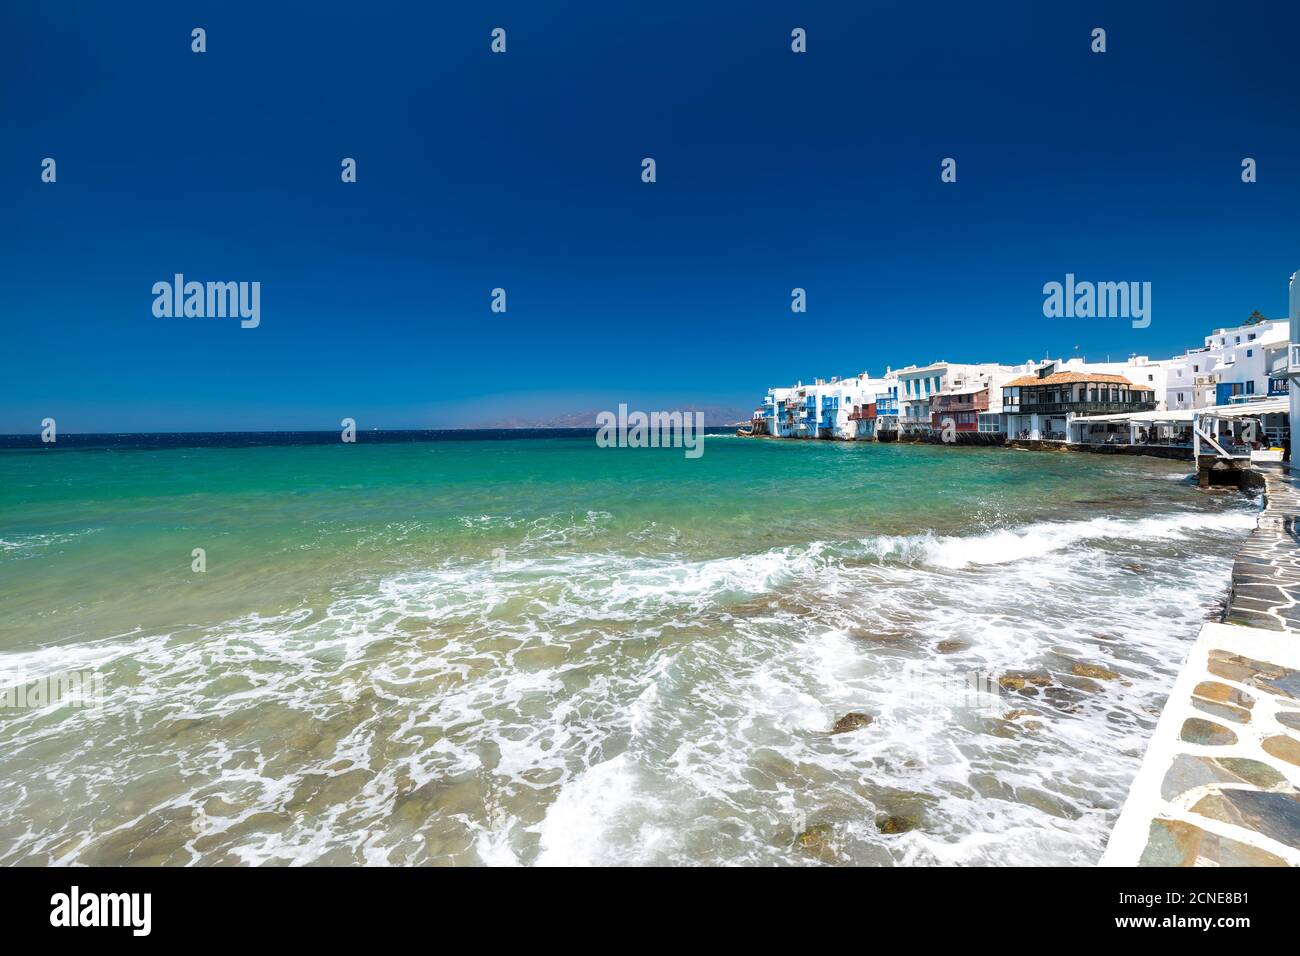 La petite Venise, la ville de Mykonos, l'île de Mykonos, Cyclades, îles grecques, Grèce, Europe Banque D'Images